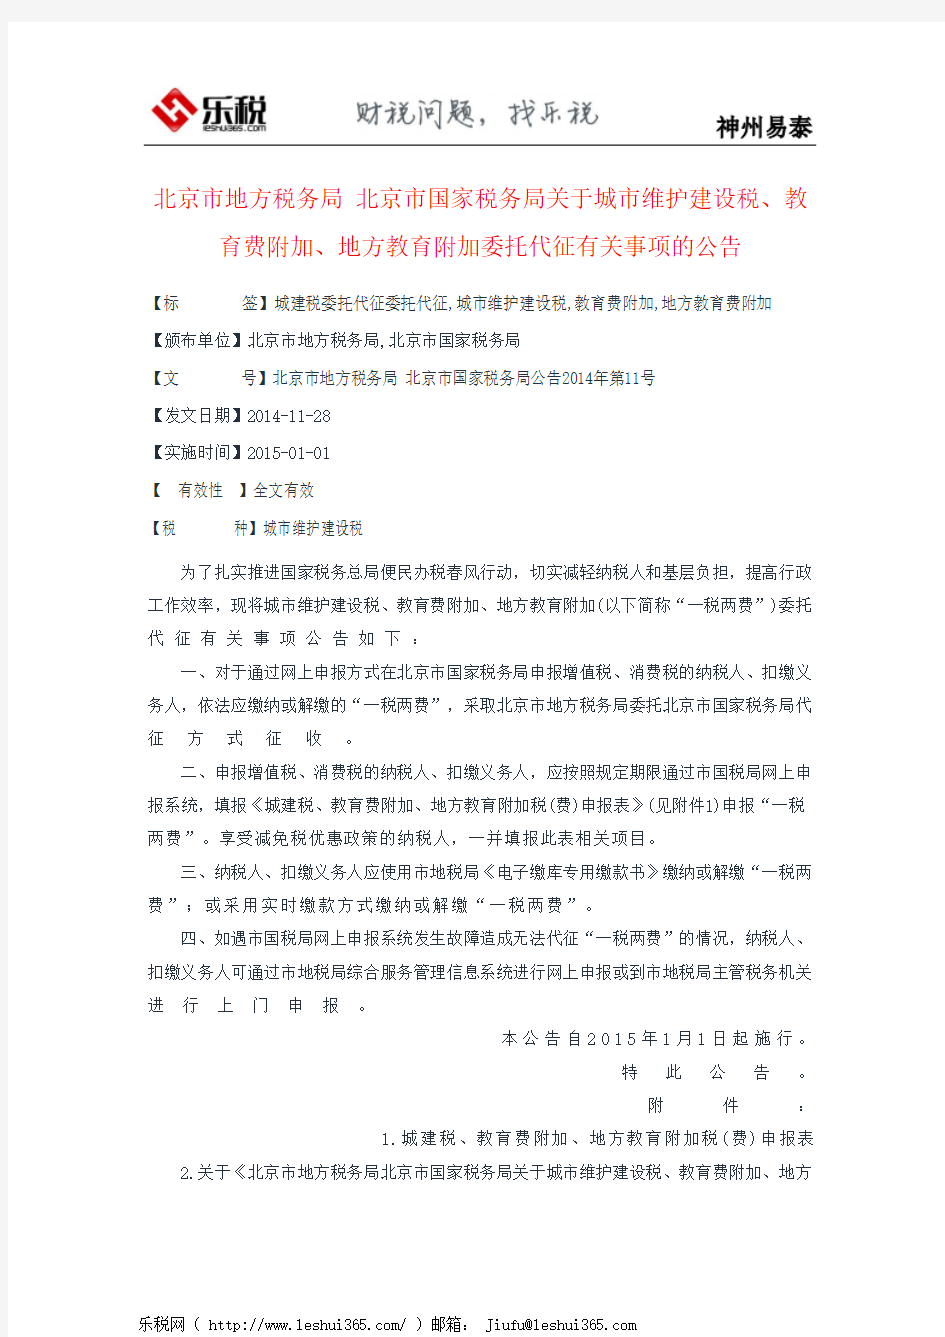 北京市地方税务局 北京市国家税务局关于城市维护建设税、教育费